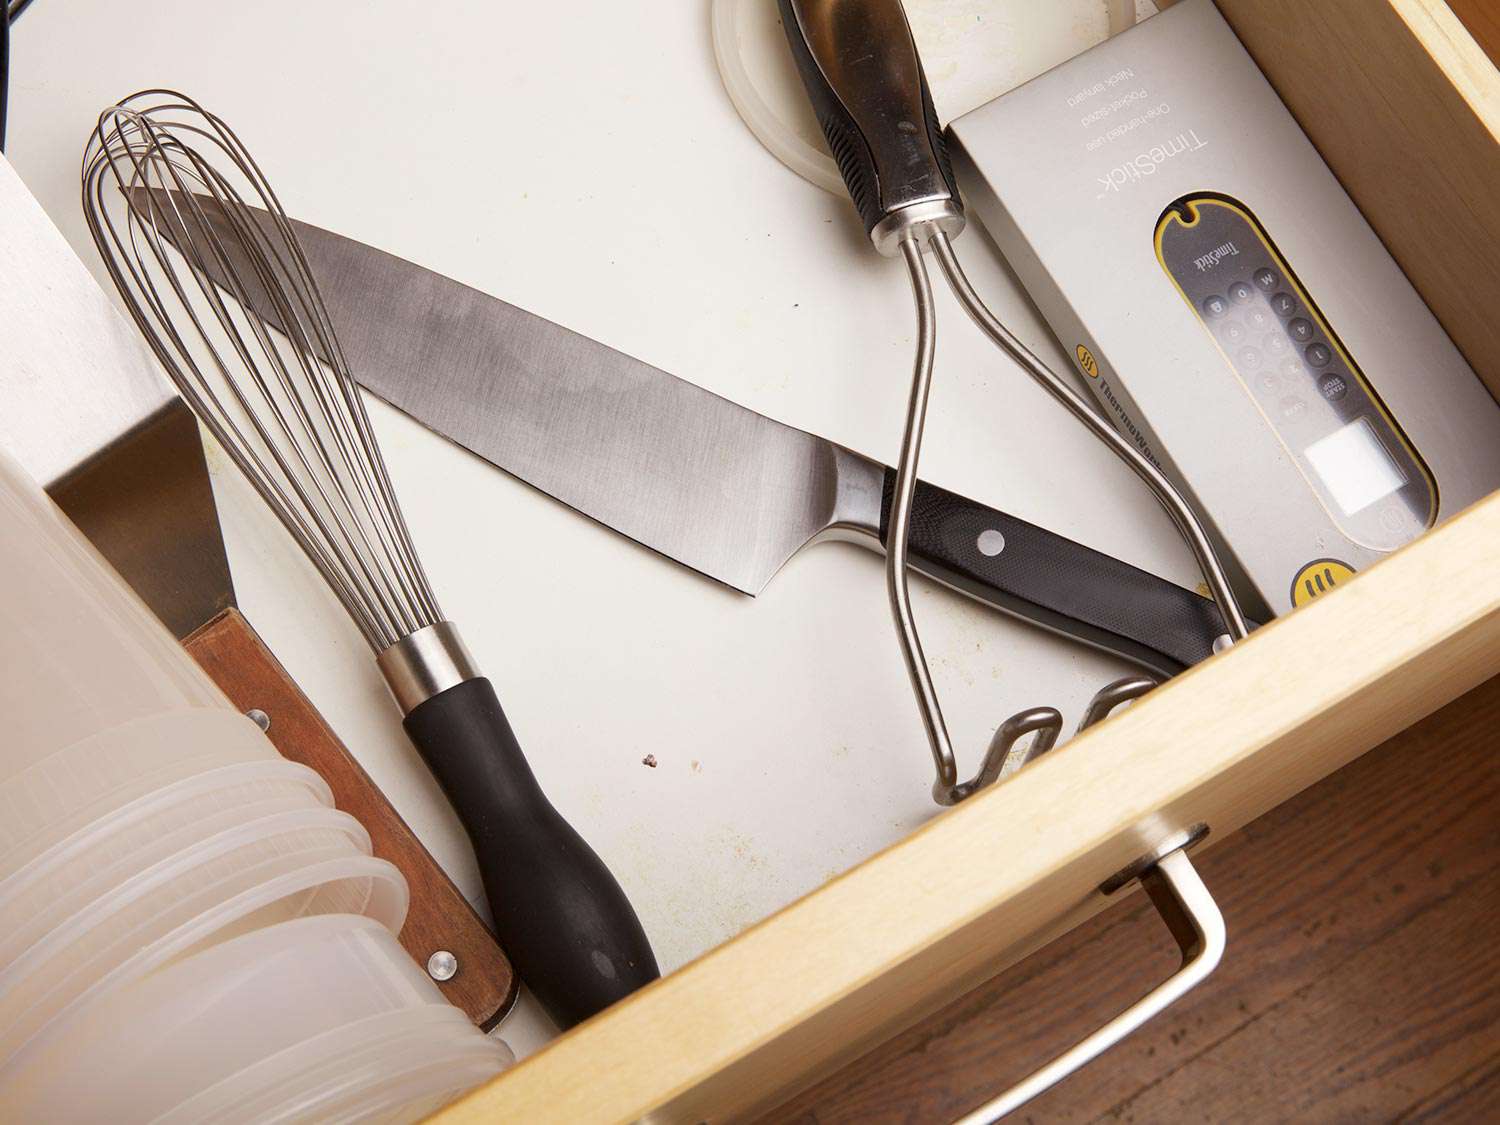 厨房抽屉里的一把刀和其他物品(打蛋器、捣碎土豆机)撞在一起